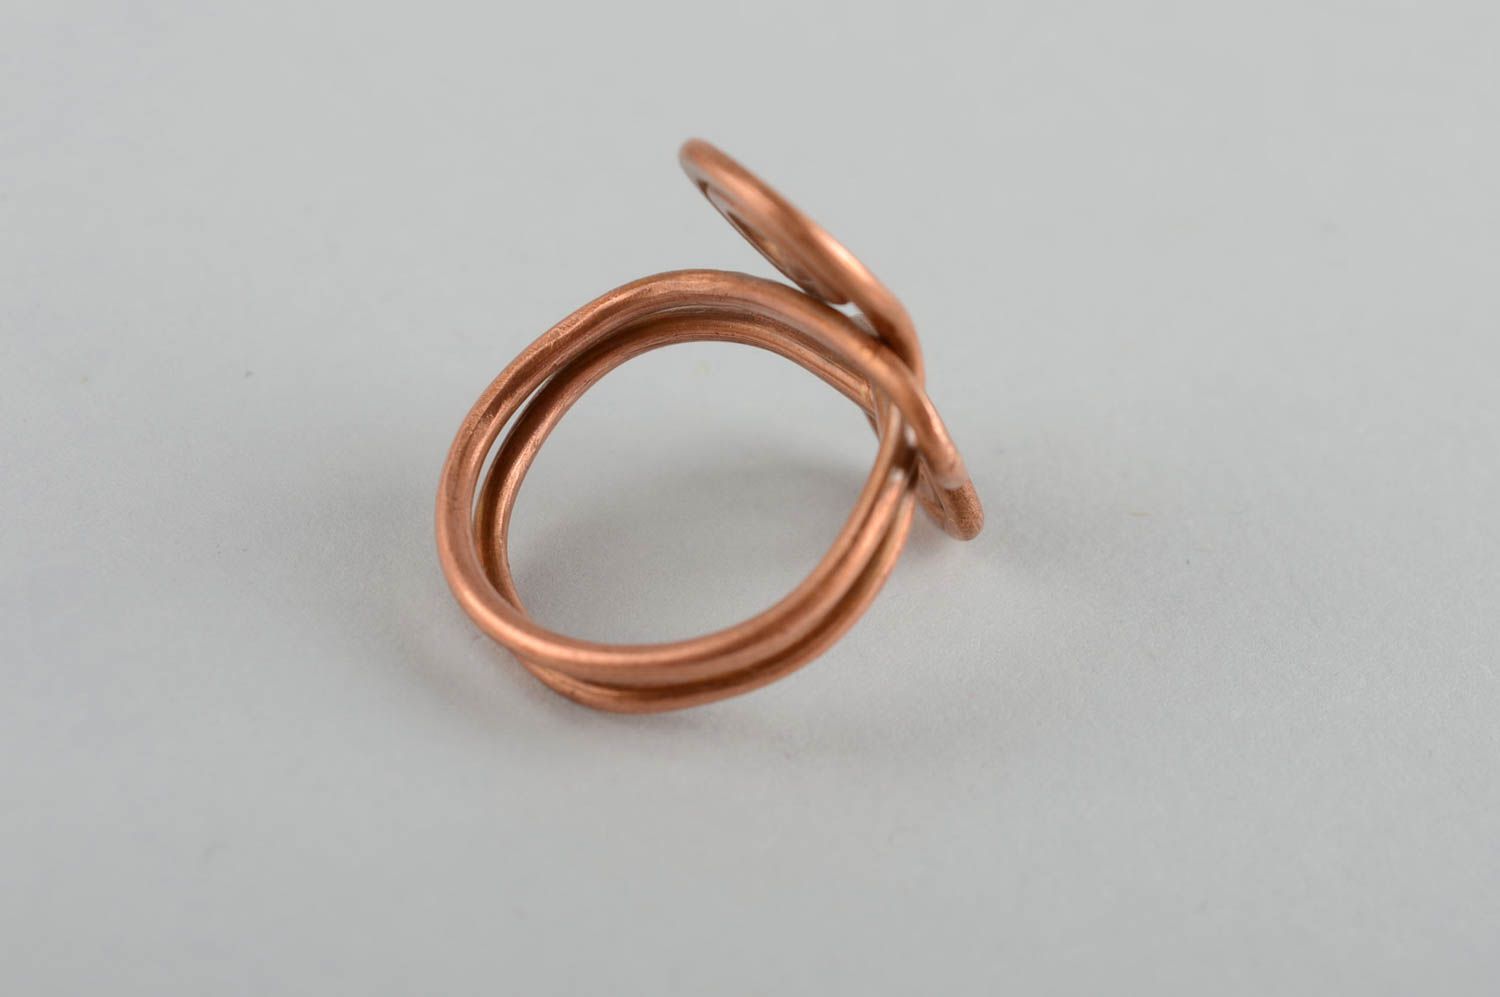 Перстень из меди крупный красивый изящный женский необычный ручной работы фото 4